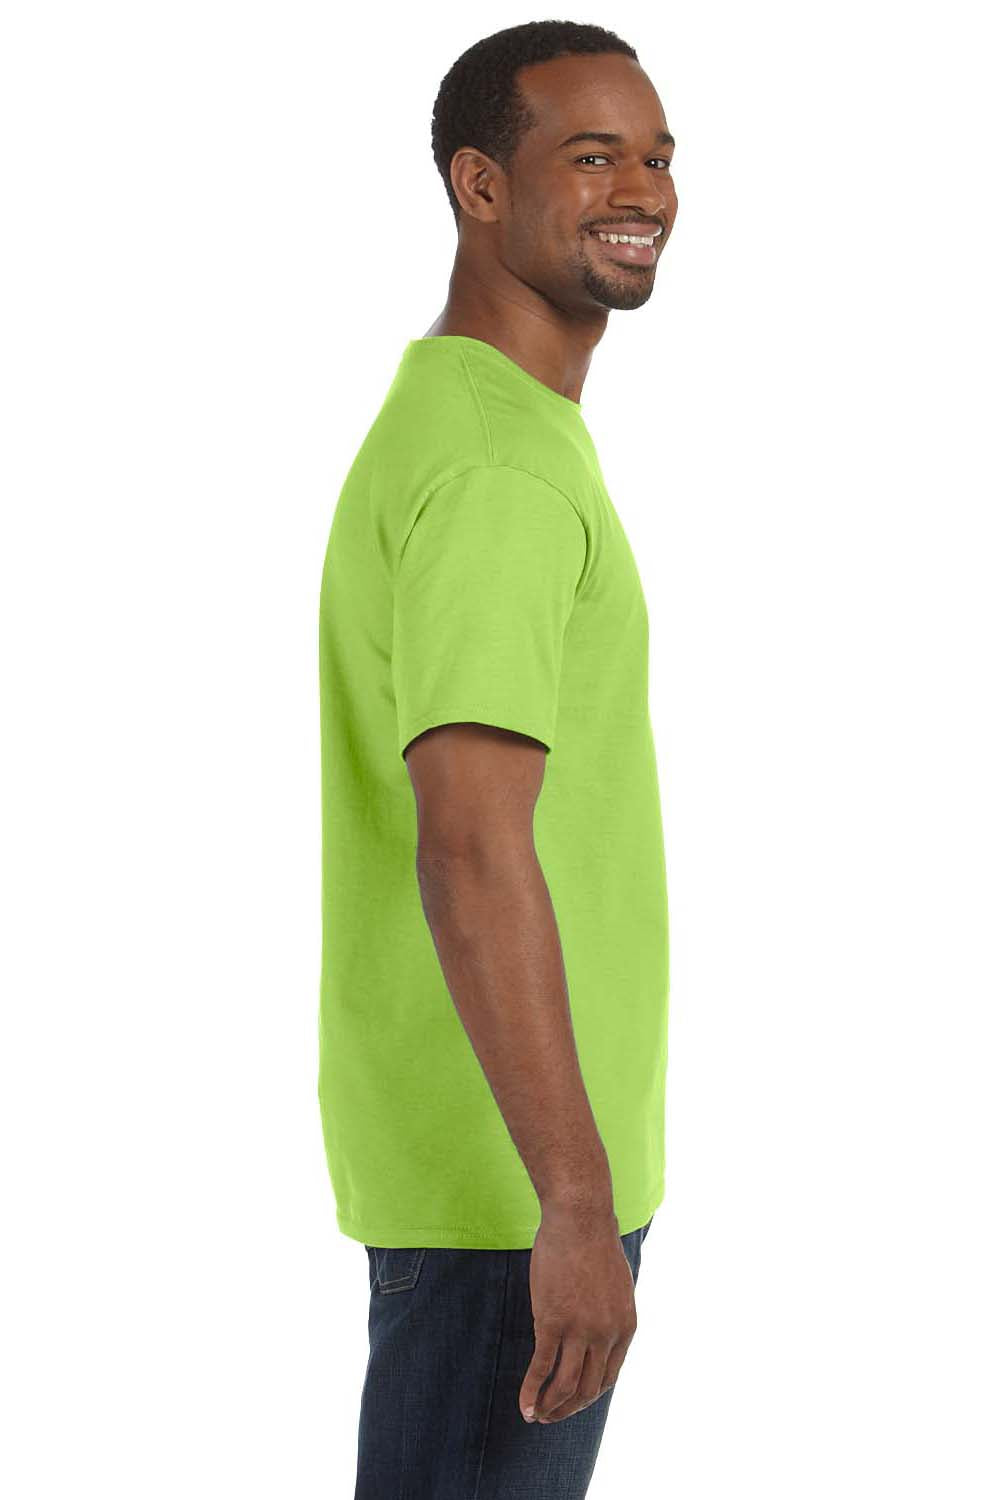 Jerzees 29M Mens Dri-Power Moisture Wicking Short Sleeve Crewneck T-Shirt Neon Green Side